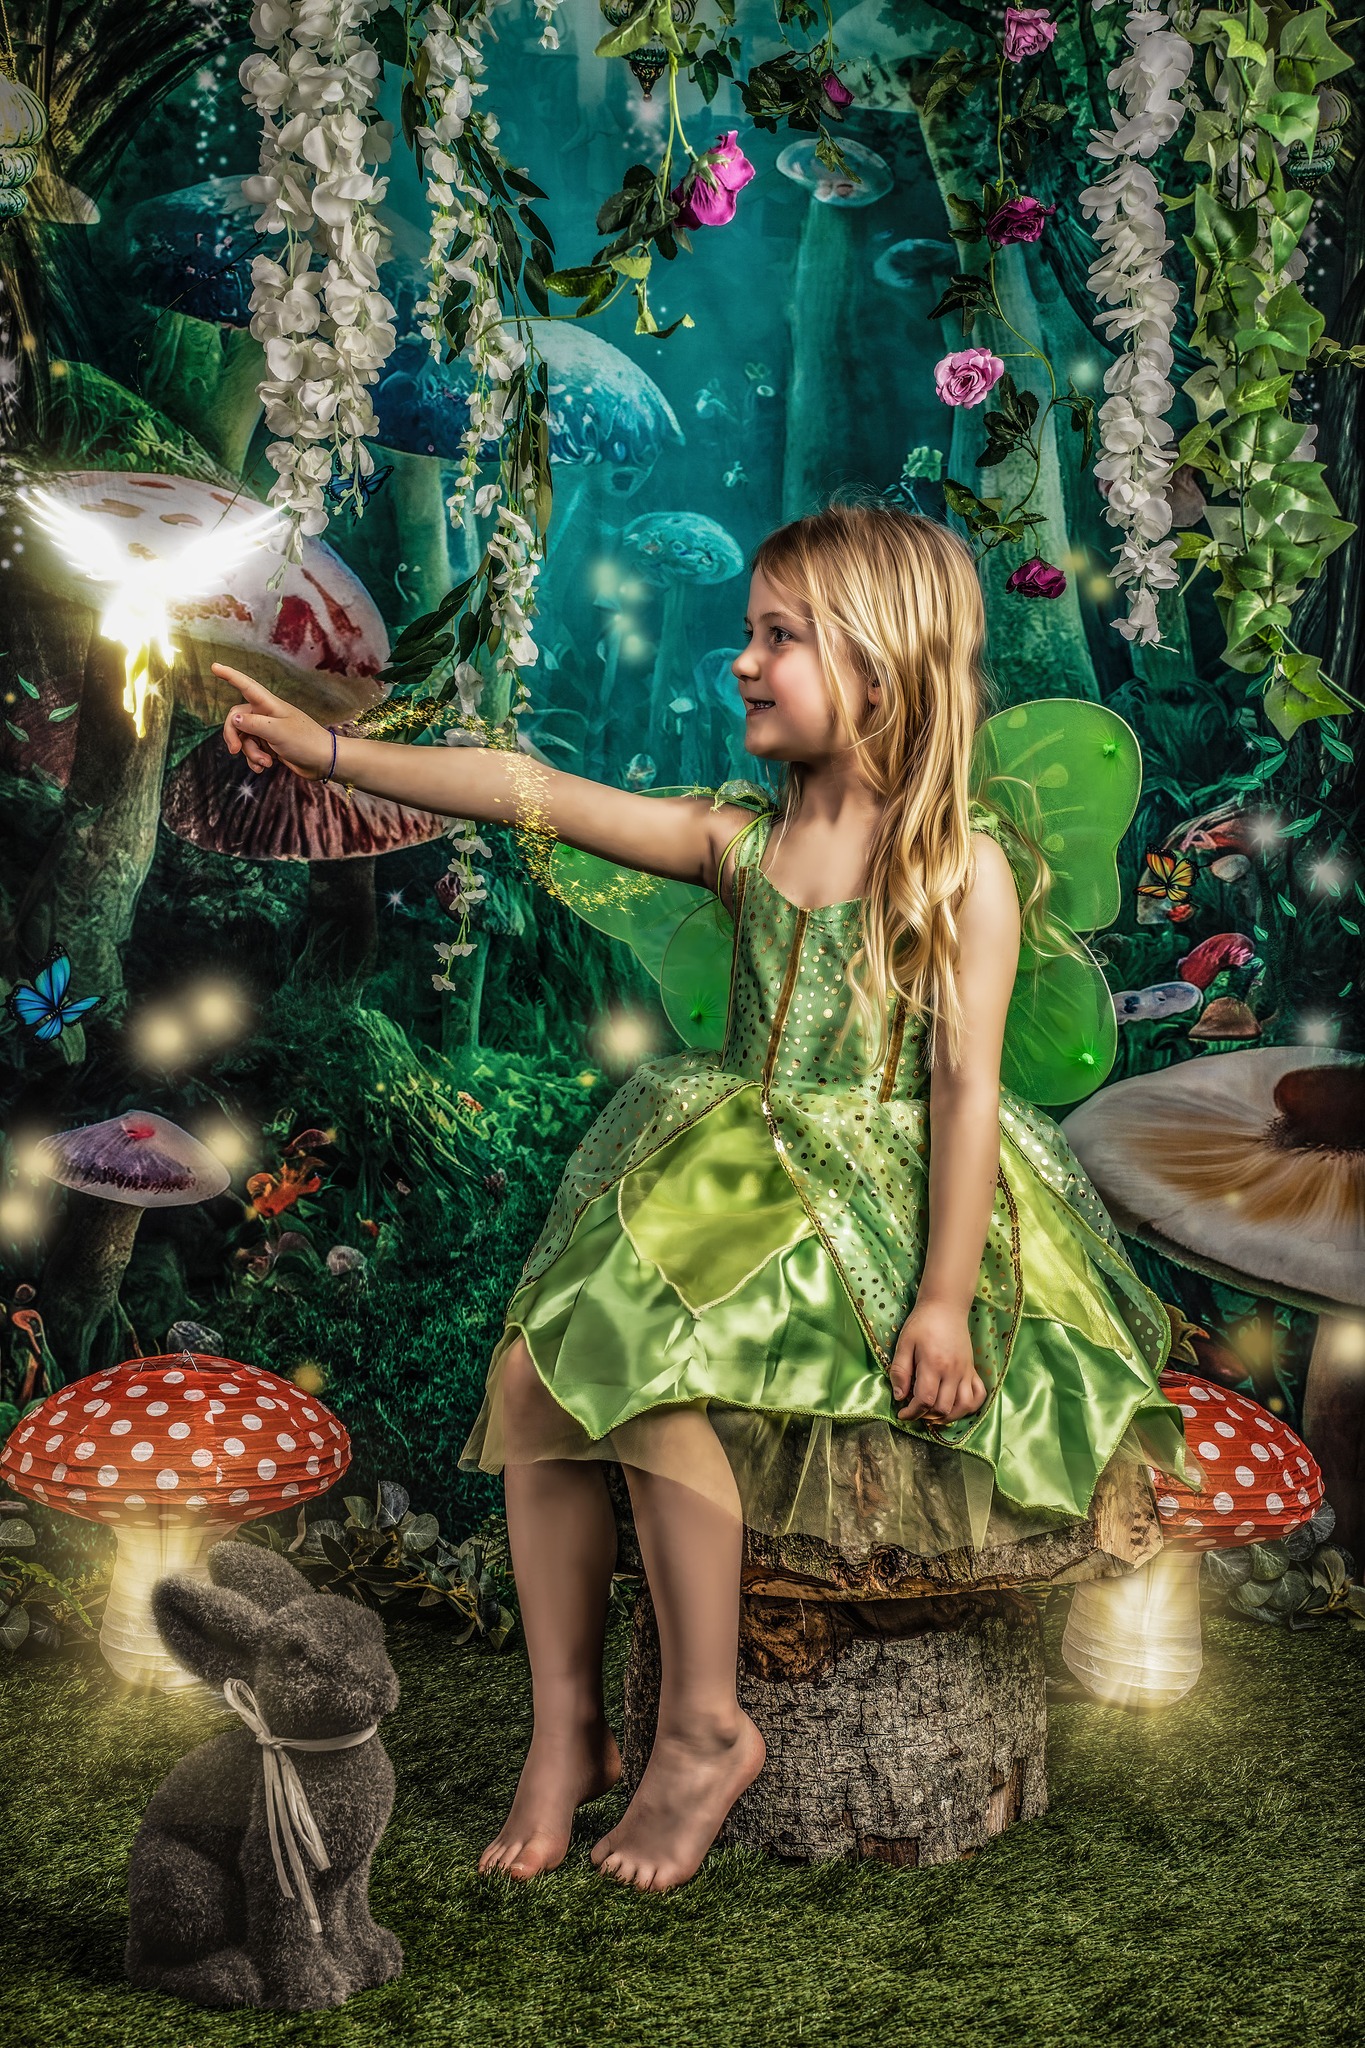 Fairy Photo Immersive Dream Fantasy